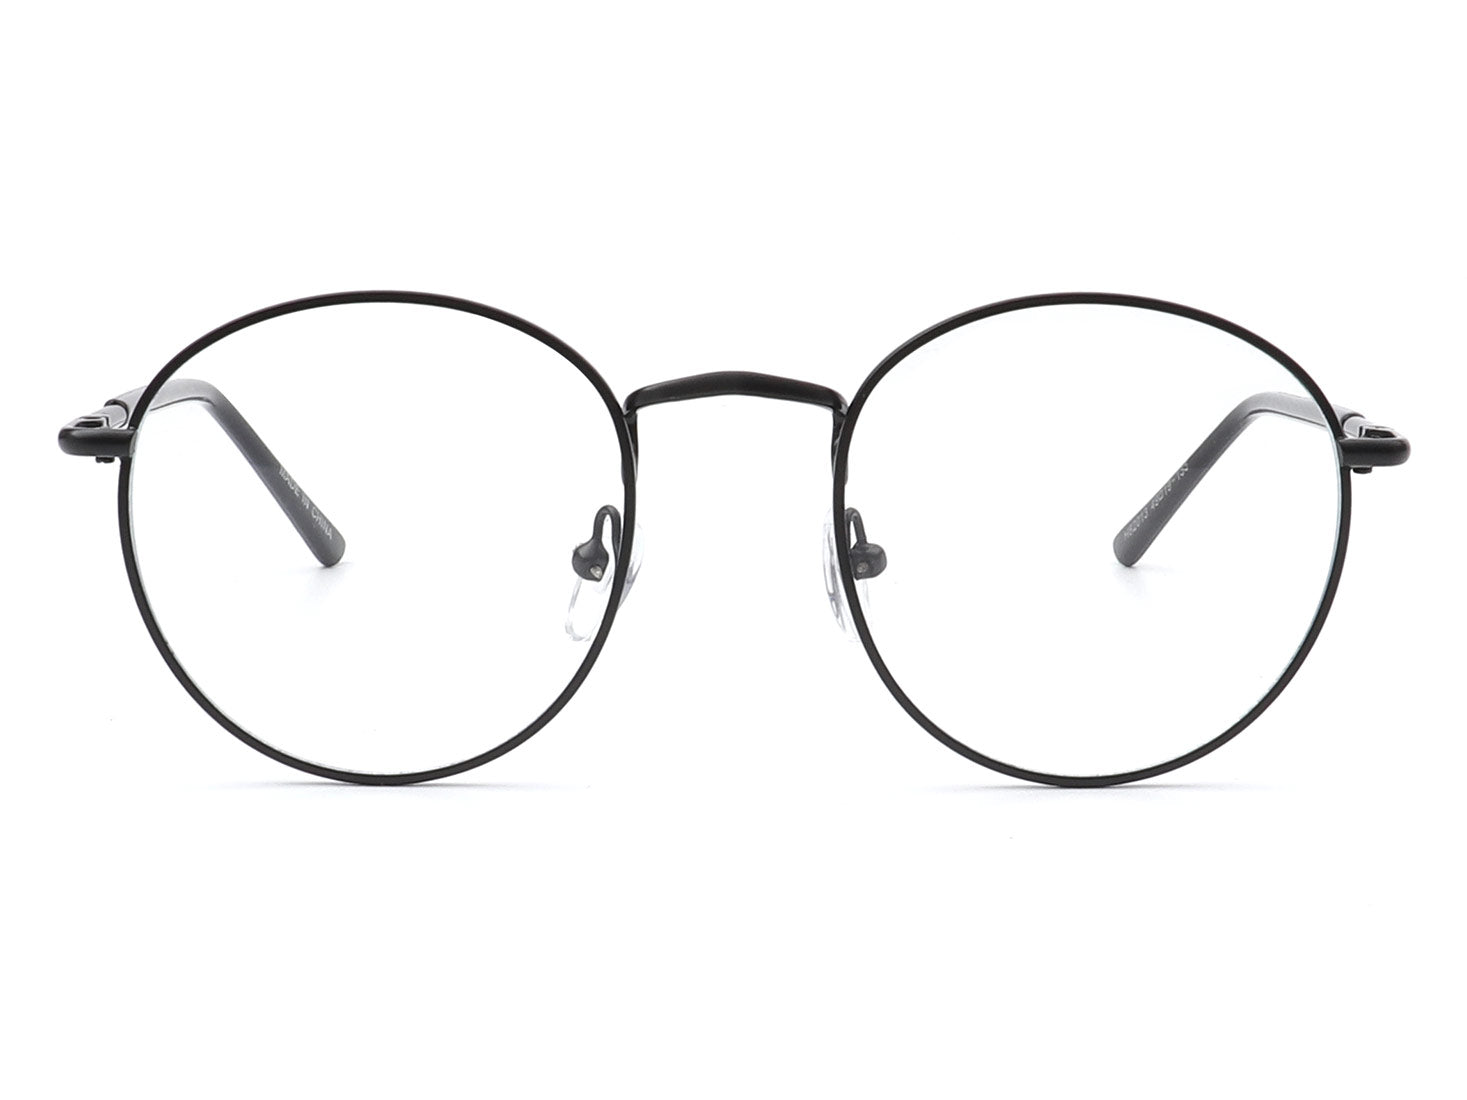 HBJ2018 - Circle Round Retro Fashion Blue Light Blocker Glasses